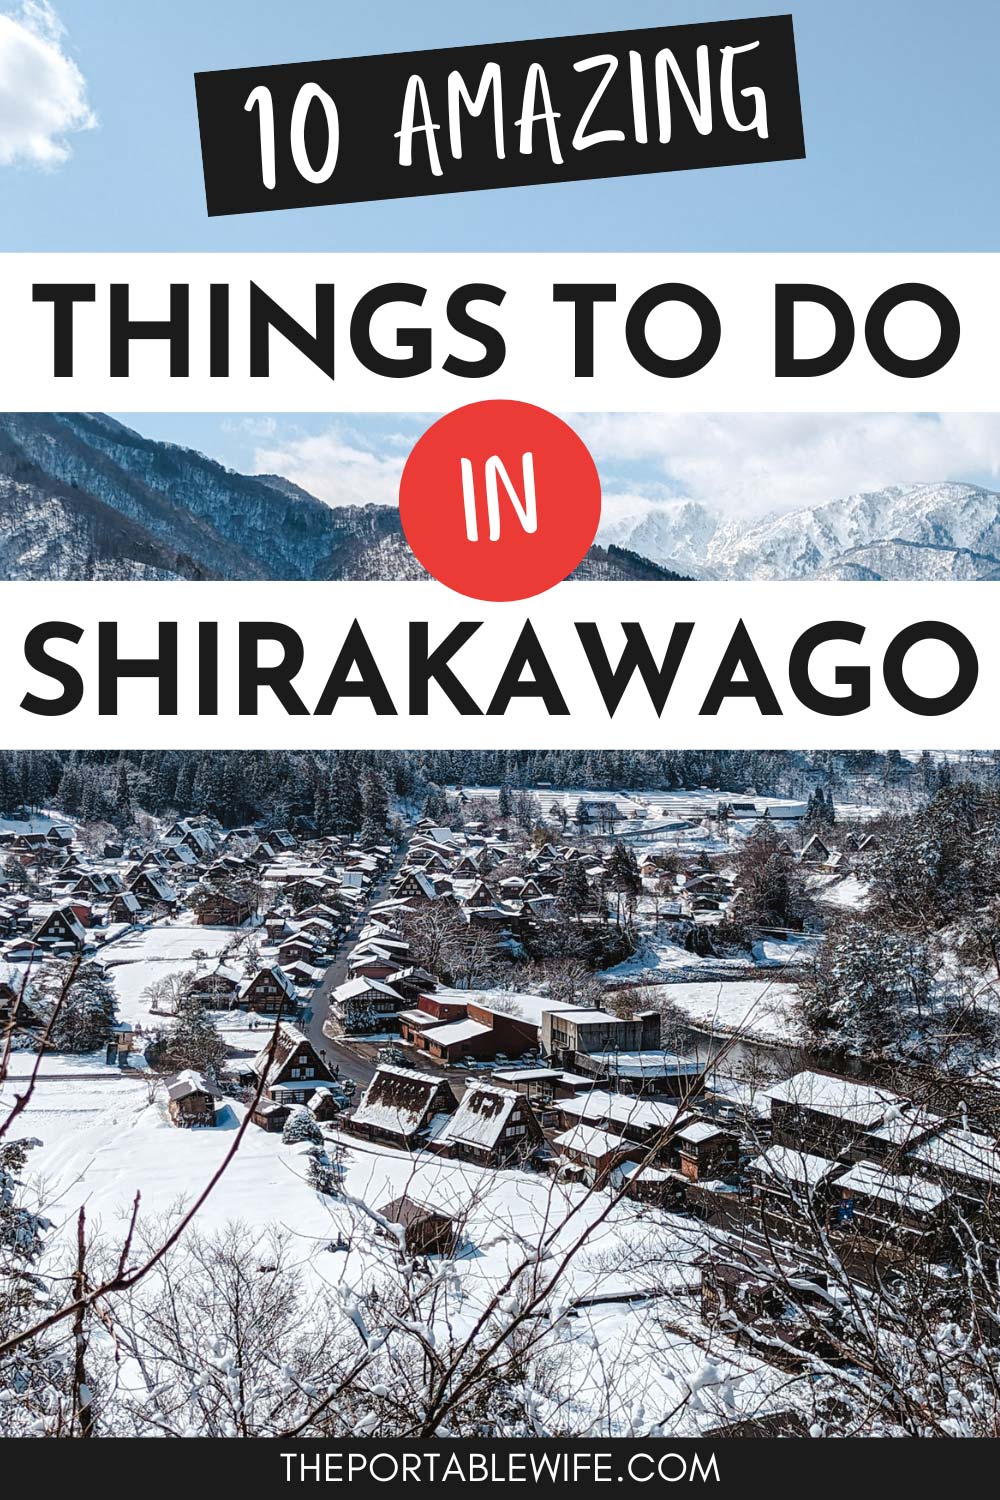 Panoramic view of village of Shirakawa-go in winter, with text overlay - "10 amazing things to do in Shirakawago".